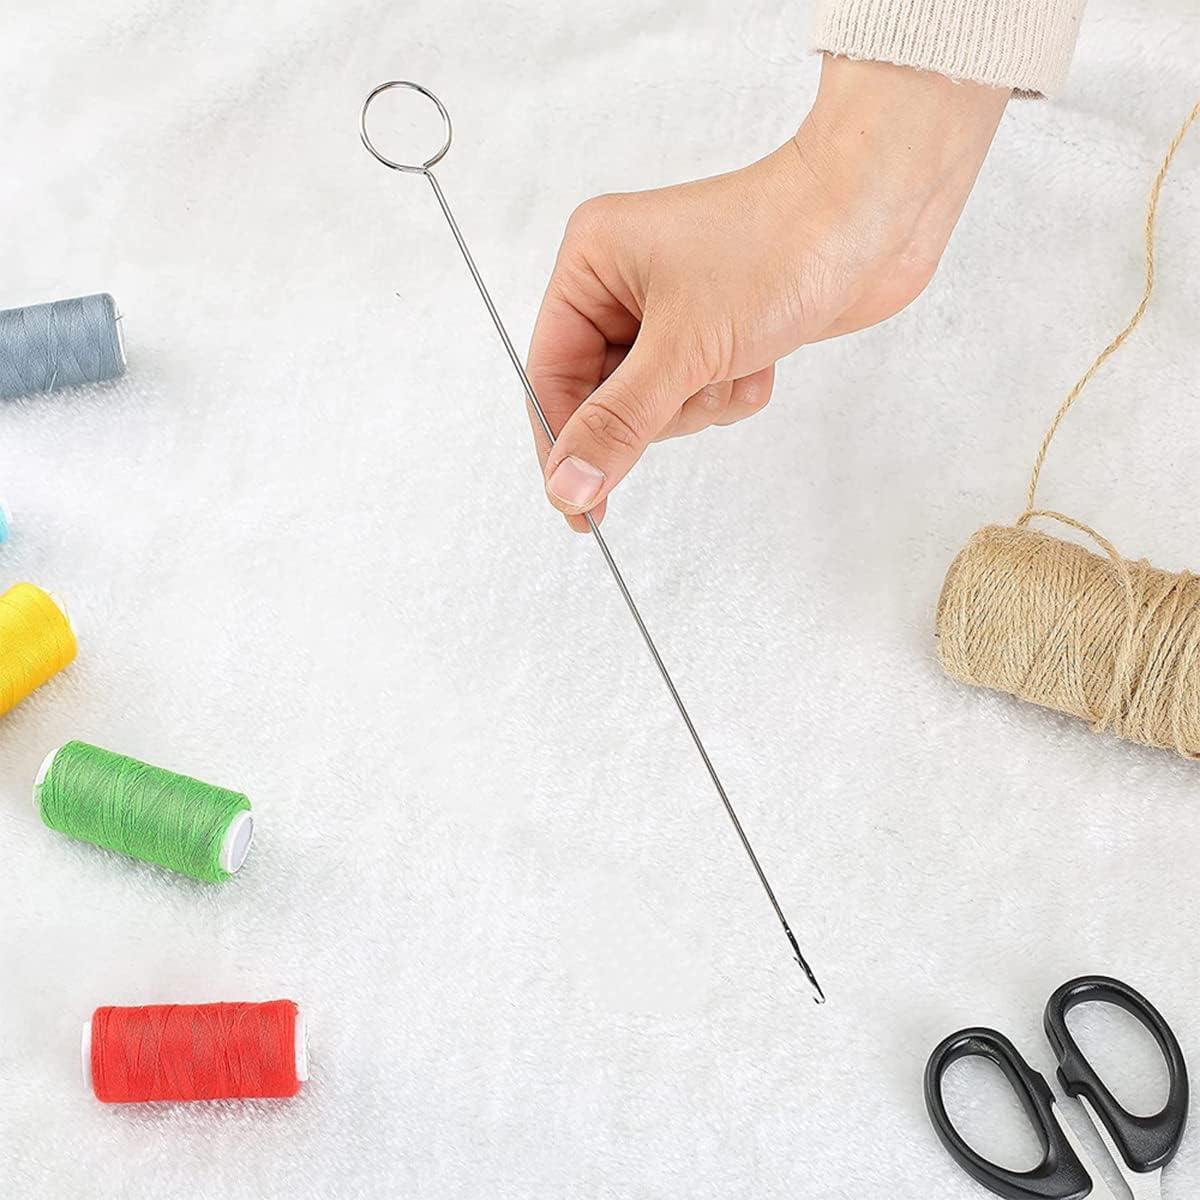  6 Pieces Sewing Loop Kit, Include Loop Turner Hook